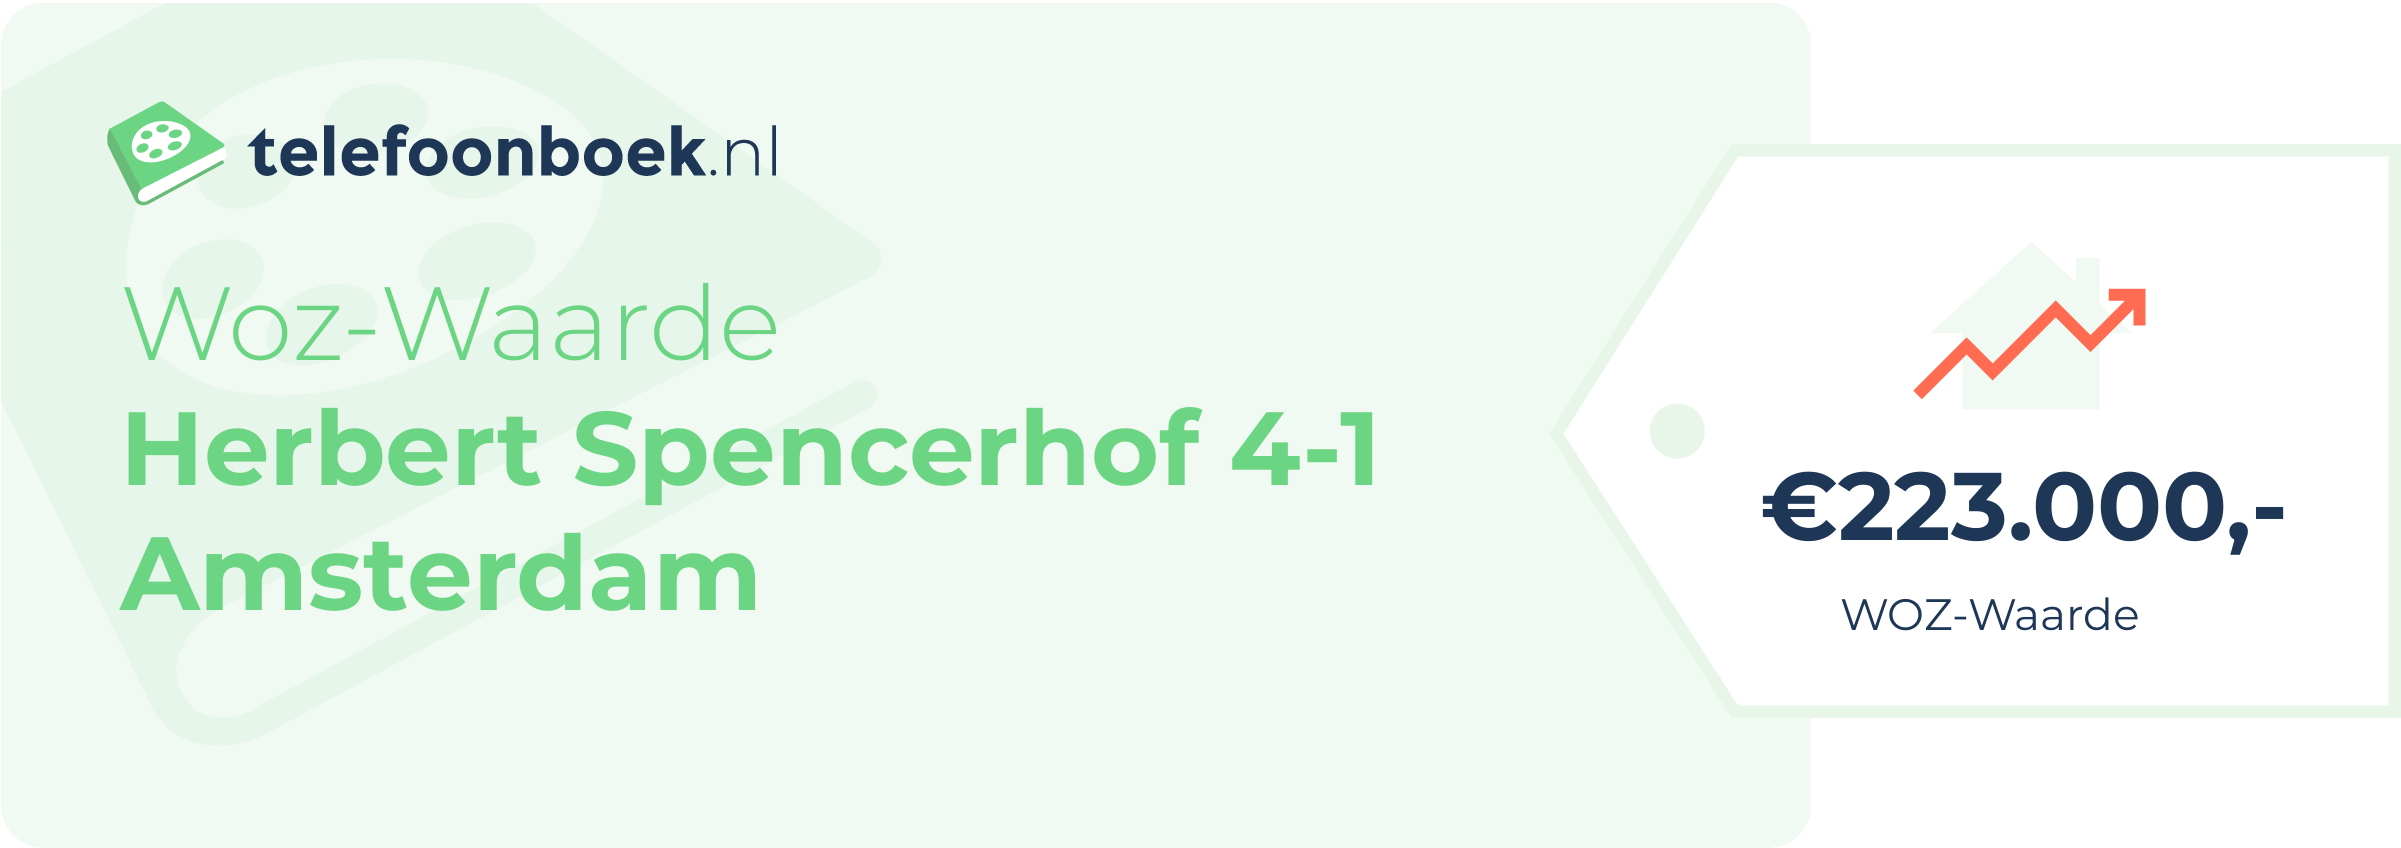 WOZ-waarde Herbert Spencerhof 4-1 Amsterdam